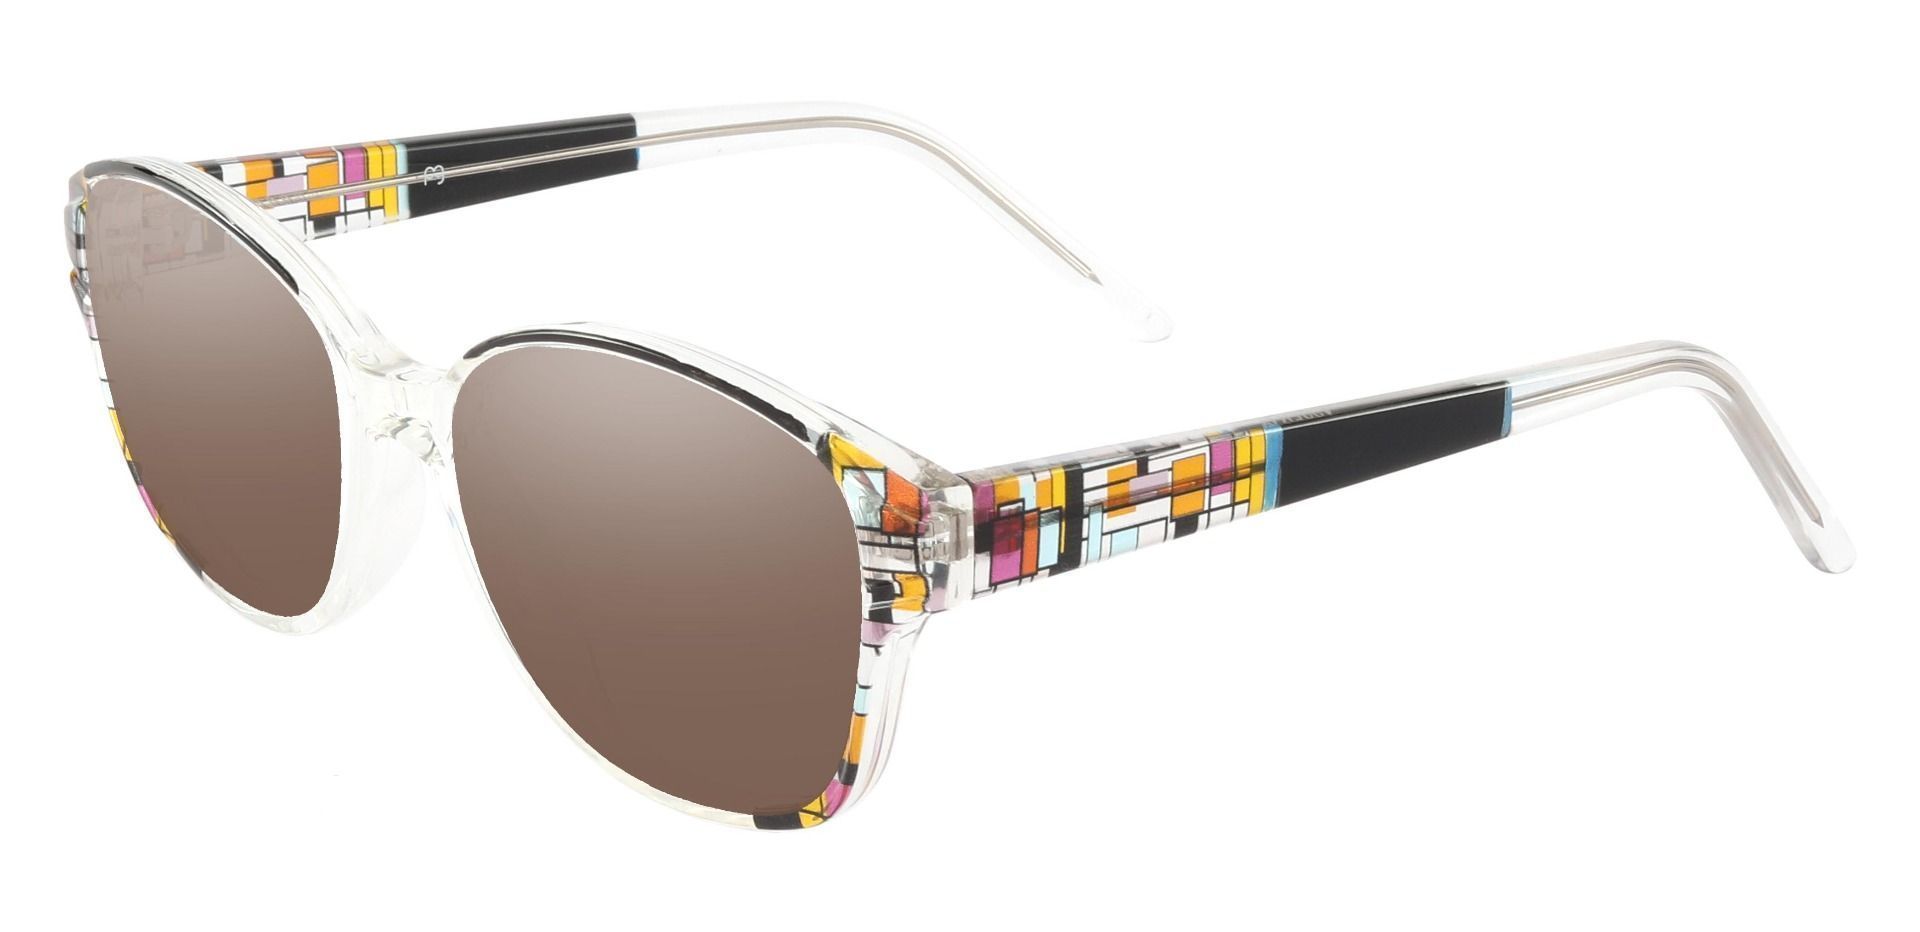 Moira Oval Prescription Sunglasses - Black Frame With Brown Lenses